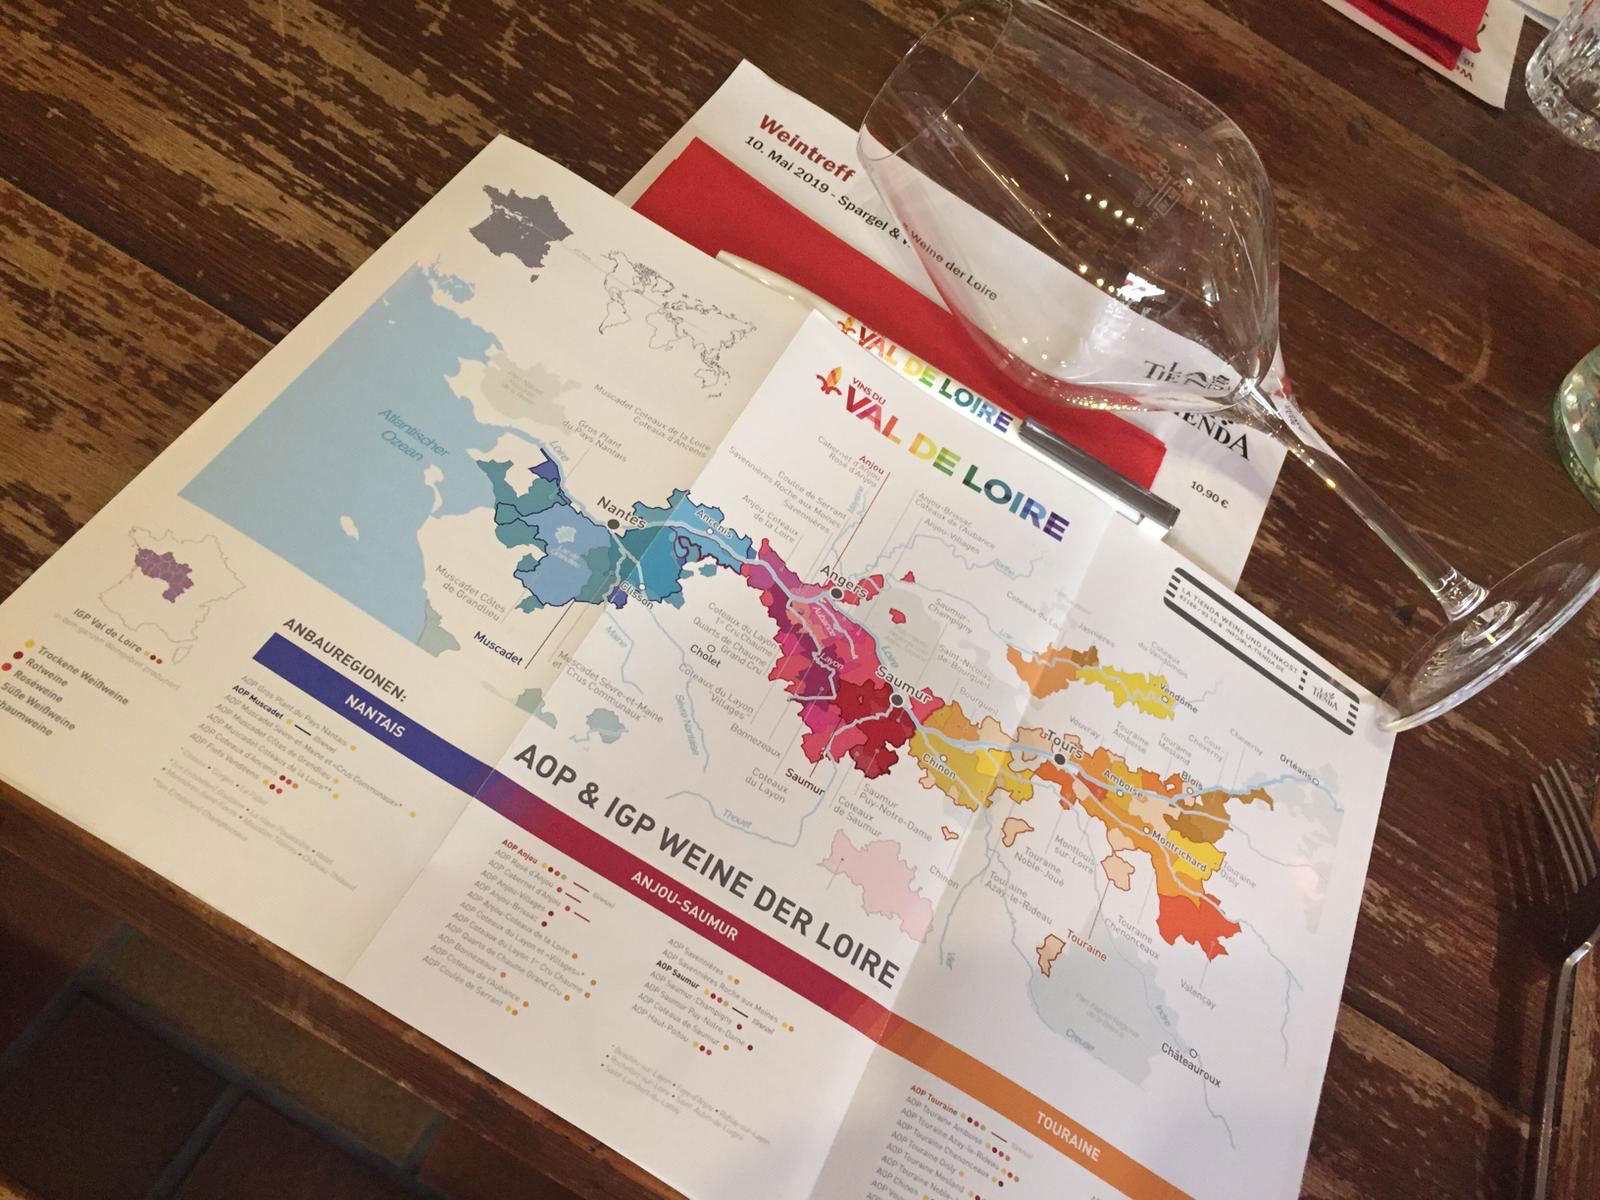 Weinreise entlang der französischen Loire mit Karte der Weinanbaugebiete